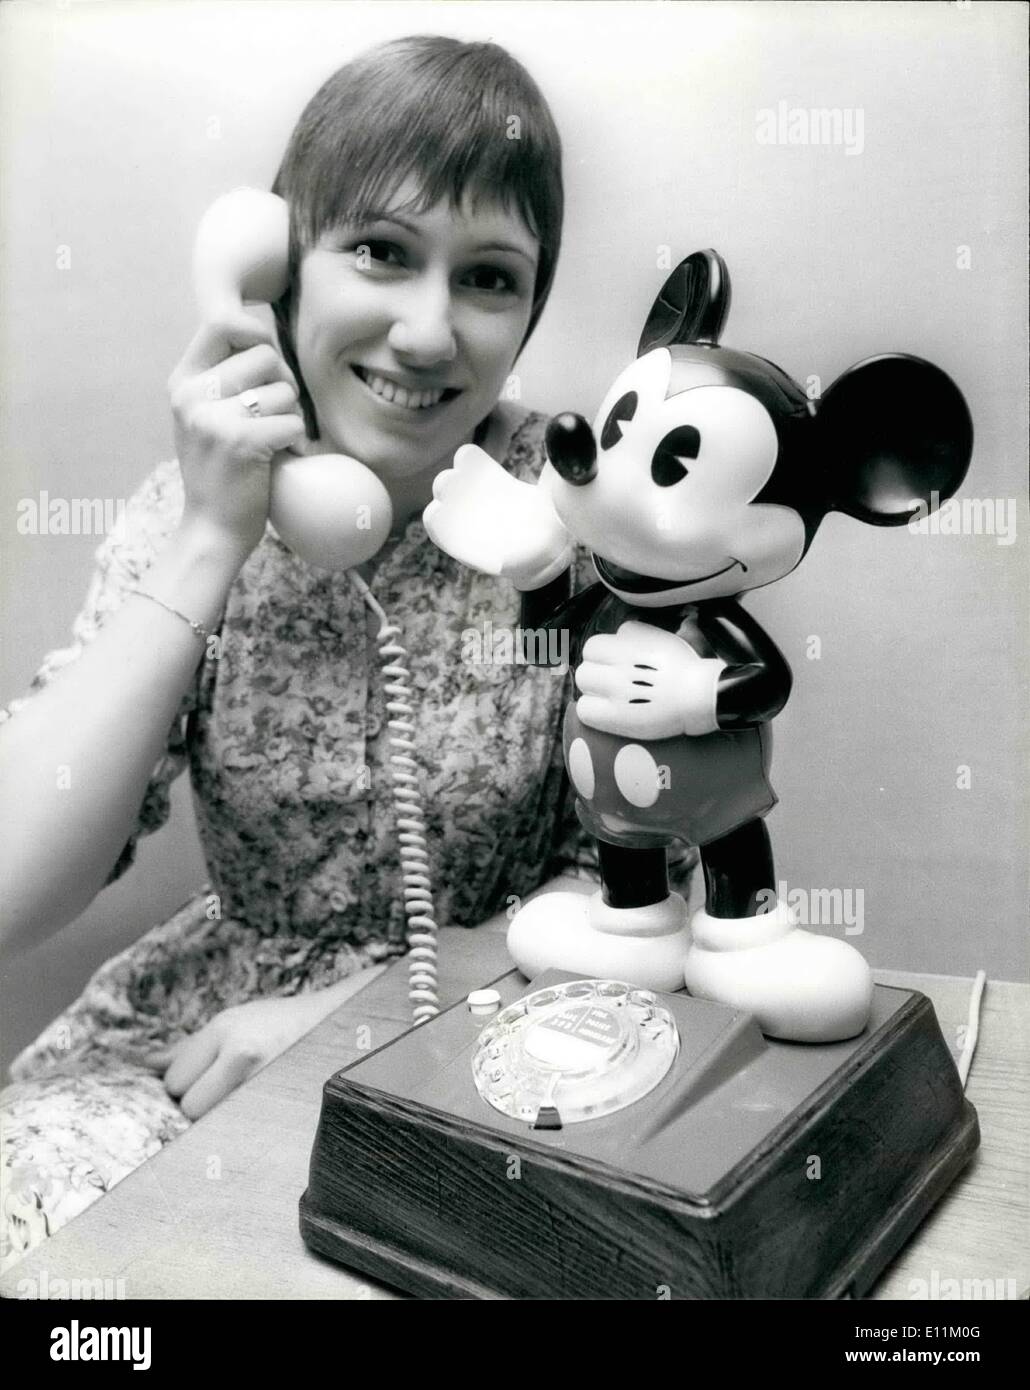 10 octobre 1978 - Mickey Mouse téléphones : le GPO mettent la nouveauté 1000 téléphones portables en forme de Mickey Mouse sur le marché coiffure, abvertising Boutigues et organismes ont déjà dit qu'ils sont prêts à payer le supplément de 5 qu'ils auront à payer pour les faire installer. Photo montre Sandra Roberts voit en utilisant le nouveau téléphone de Mickey Mouse. Banque D'Images